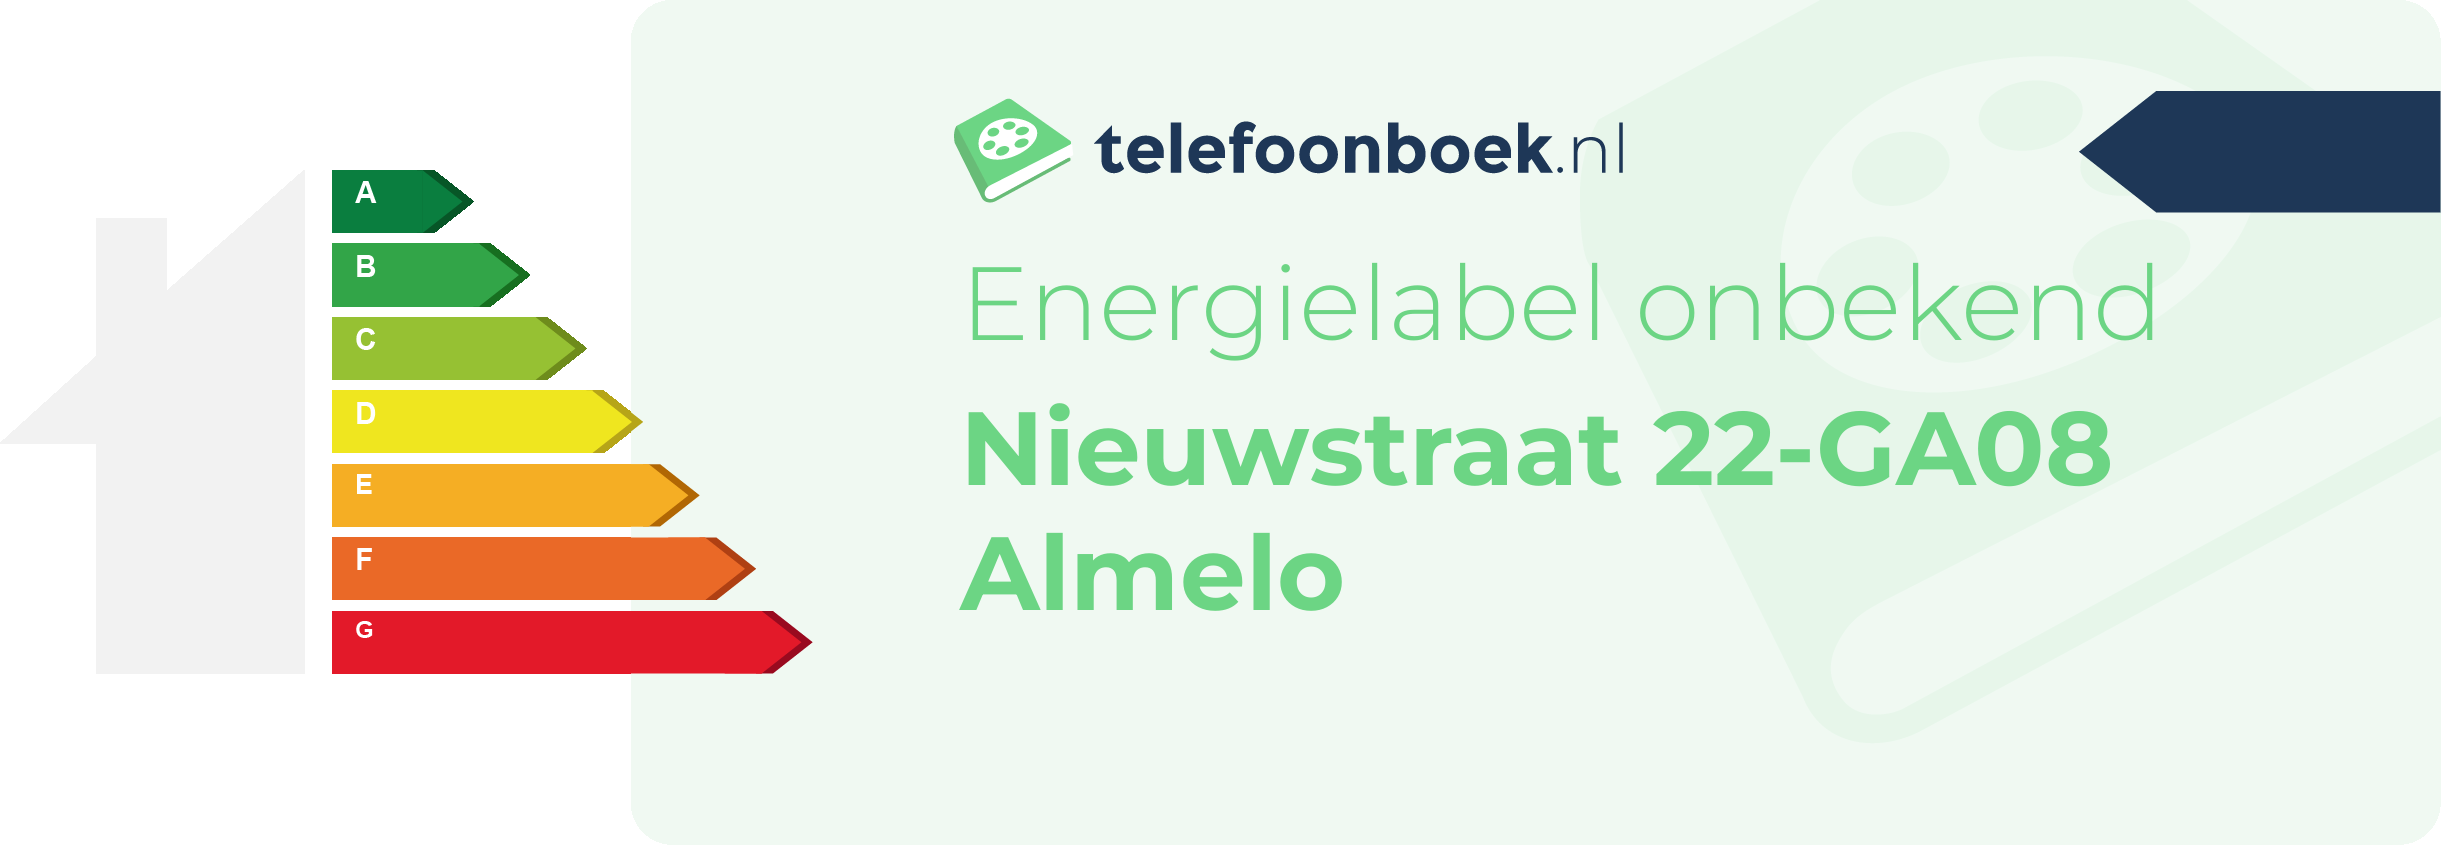 Energielabel Nieuwstraat 22-GA08 Almelo